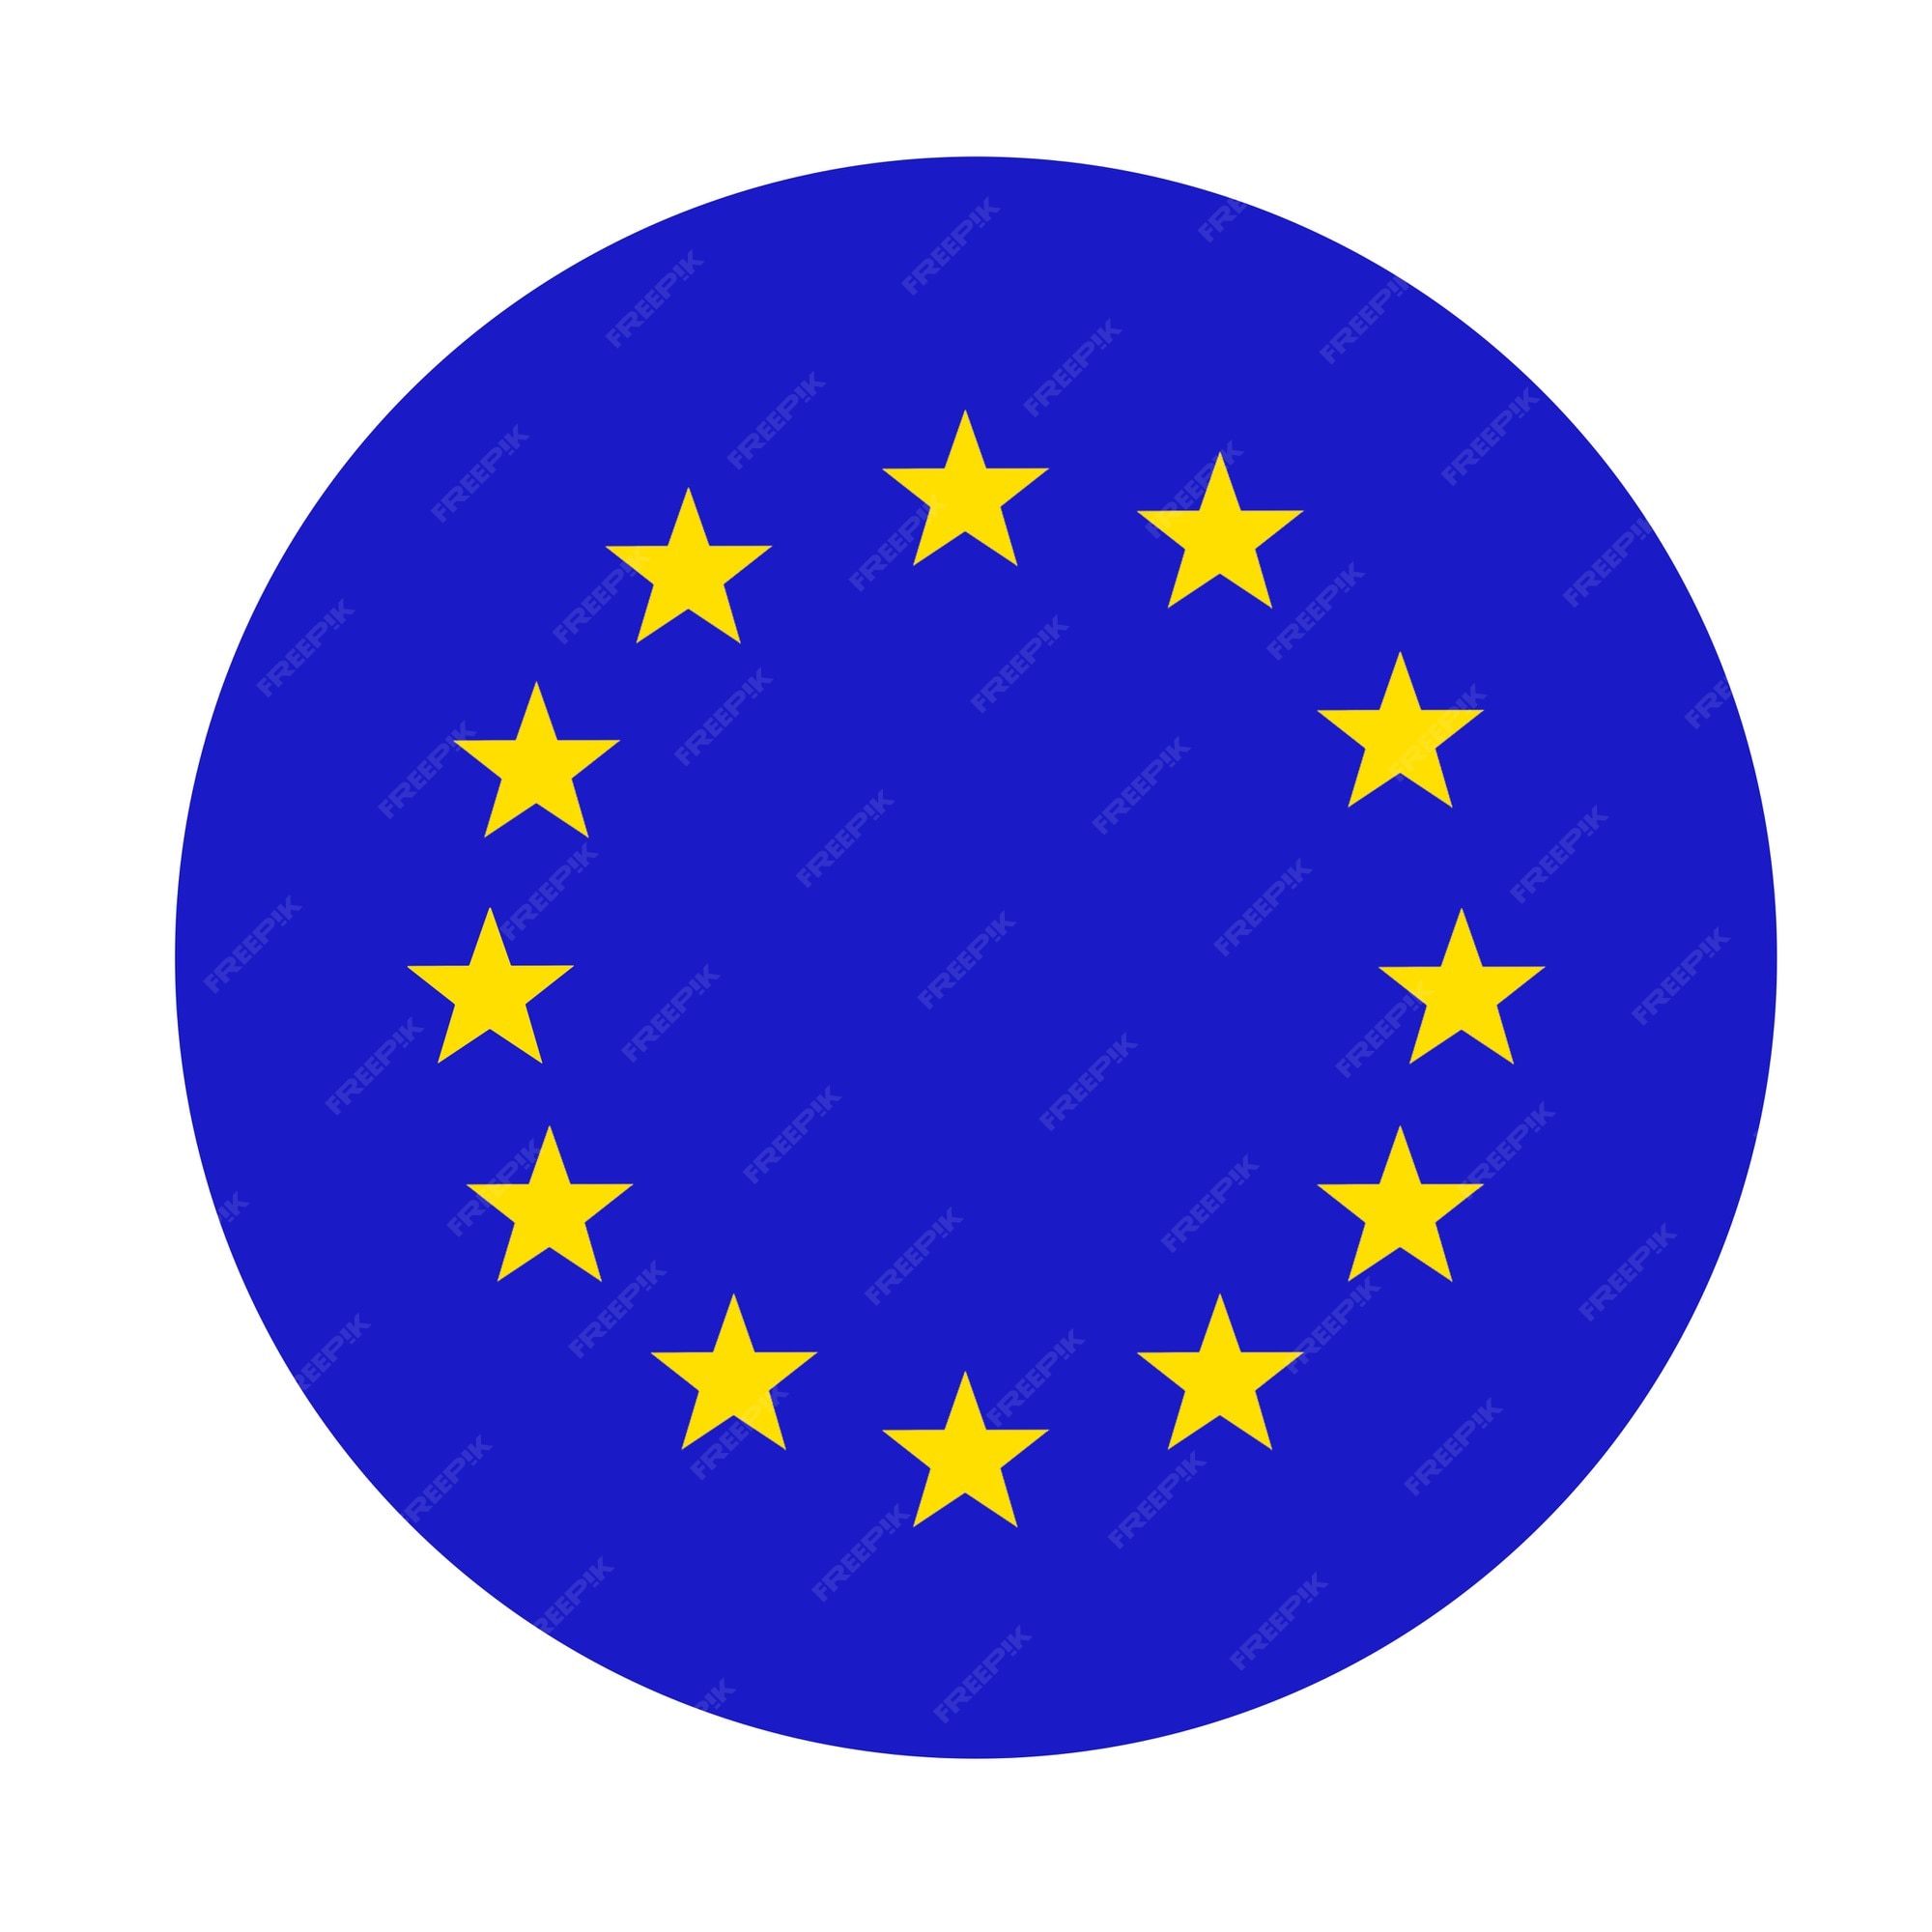 Hình ảnh cao cấp của Icon tròn cờ Liên minh châu Âu chính thức sẽ khiến bạn tràn đầy niềm đam mê. Với chất lượng và sắc nét đến từng chi tiết, những hình ảnh này sẽ khiến cho bất kỳ dự án thiết kế nào của bạn trở nên hoàn hảo hơn bao giờ hết.